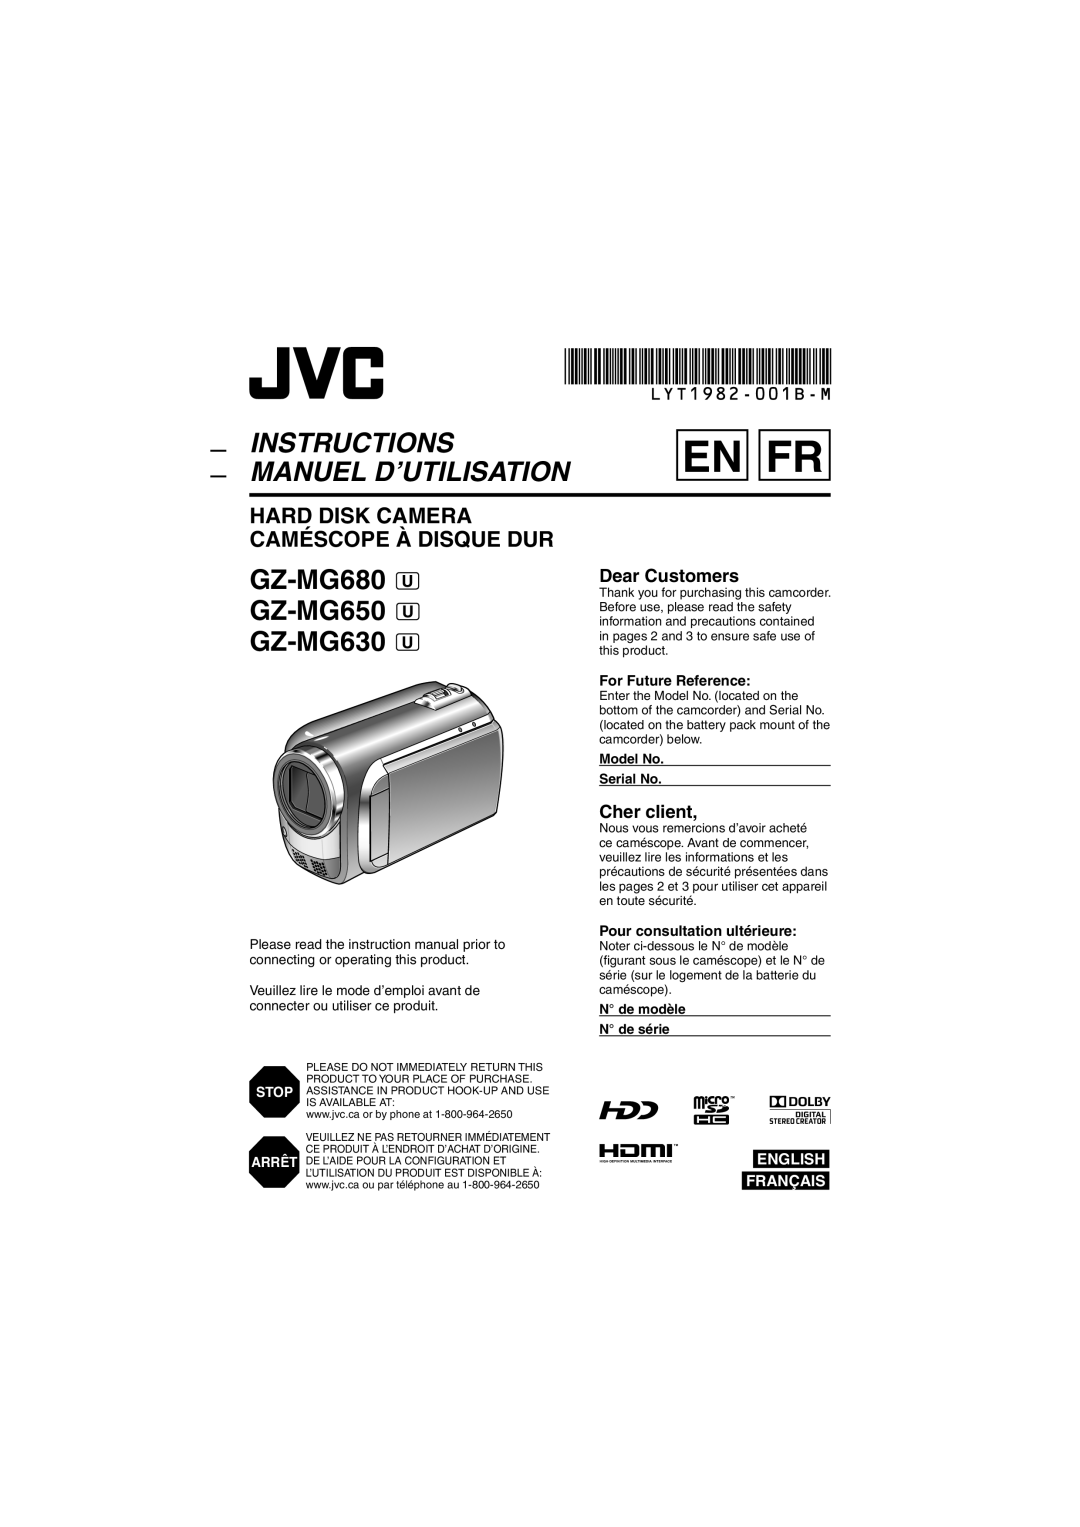 JVC GZ-MG680 manuel dutilisation Hard Disk Camera Caméscope À Disque Dur, En Fr, Instructions Manuel D’Utilisation 